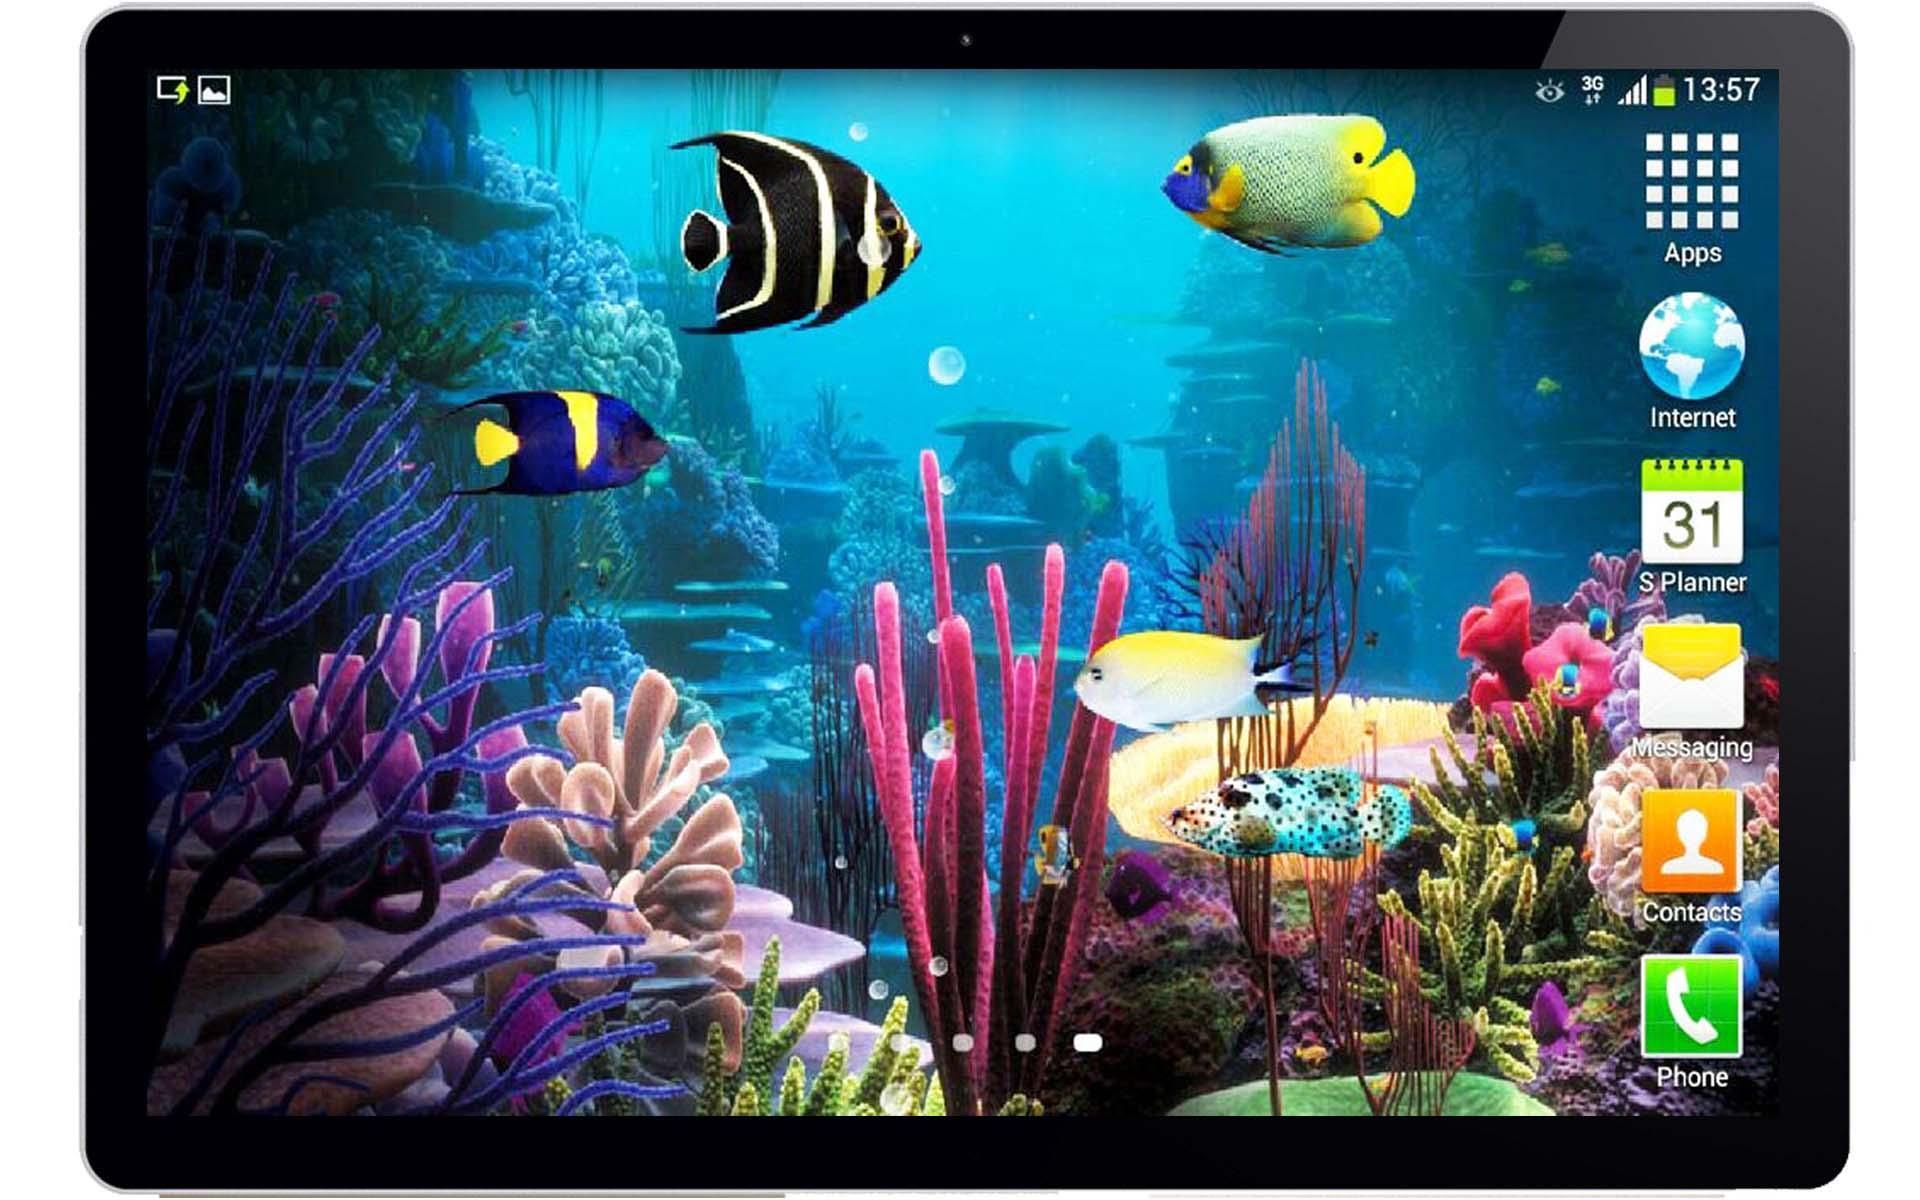 Живые аквариумы на телефон. Живой аквариум. Живые обои аквариум. Заставка аквариум с рыбками. Живые обои аквариум для андроид.